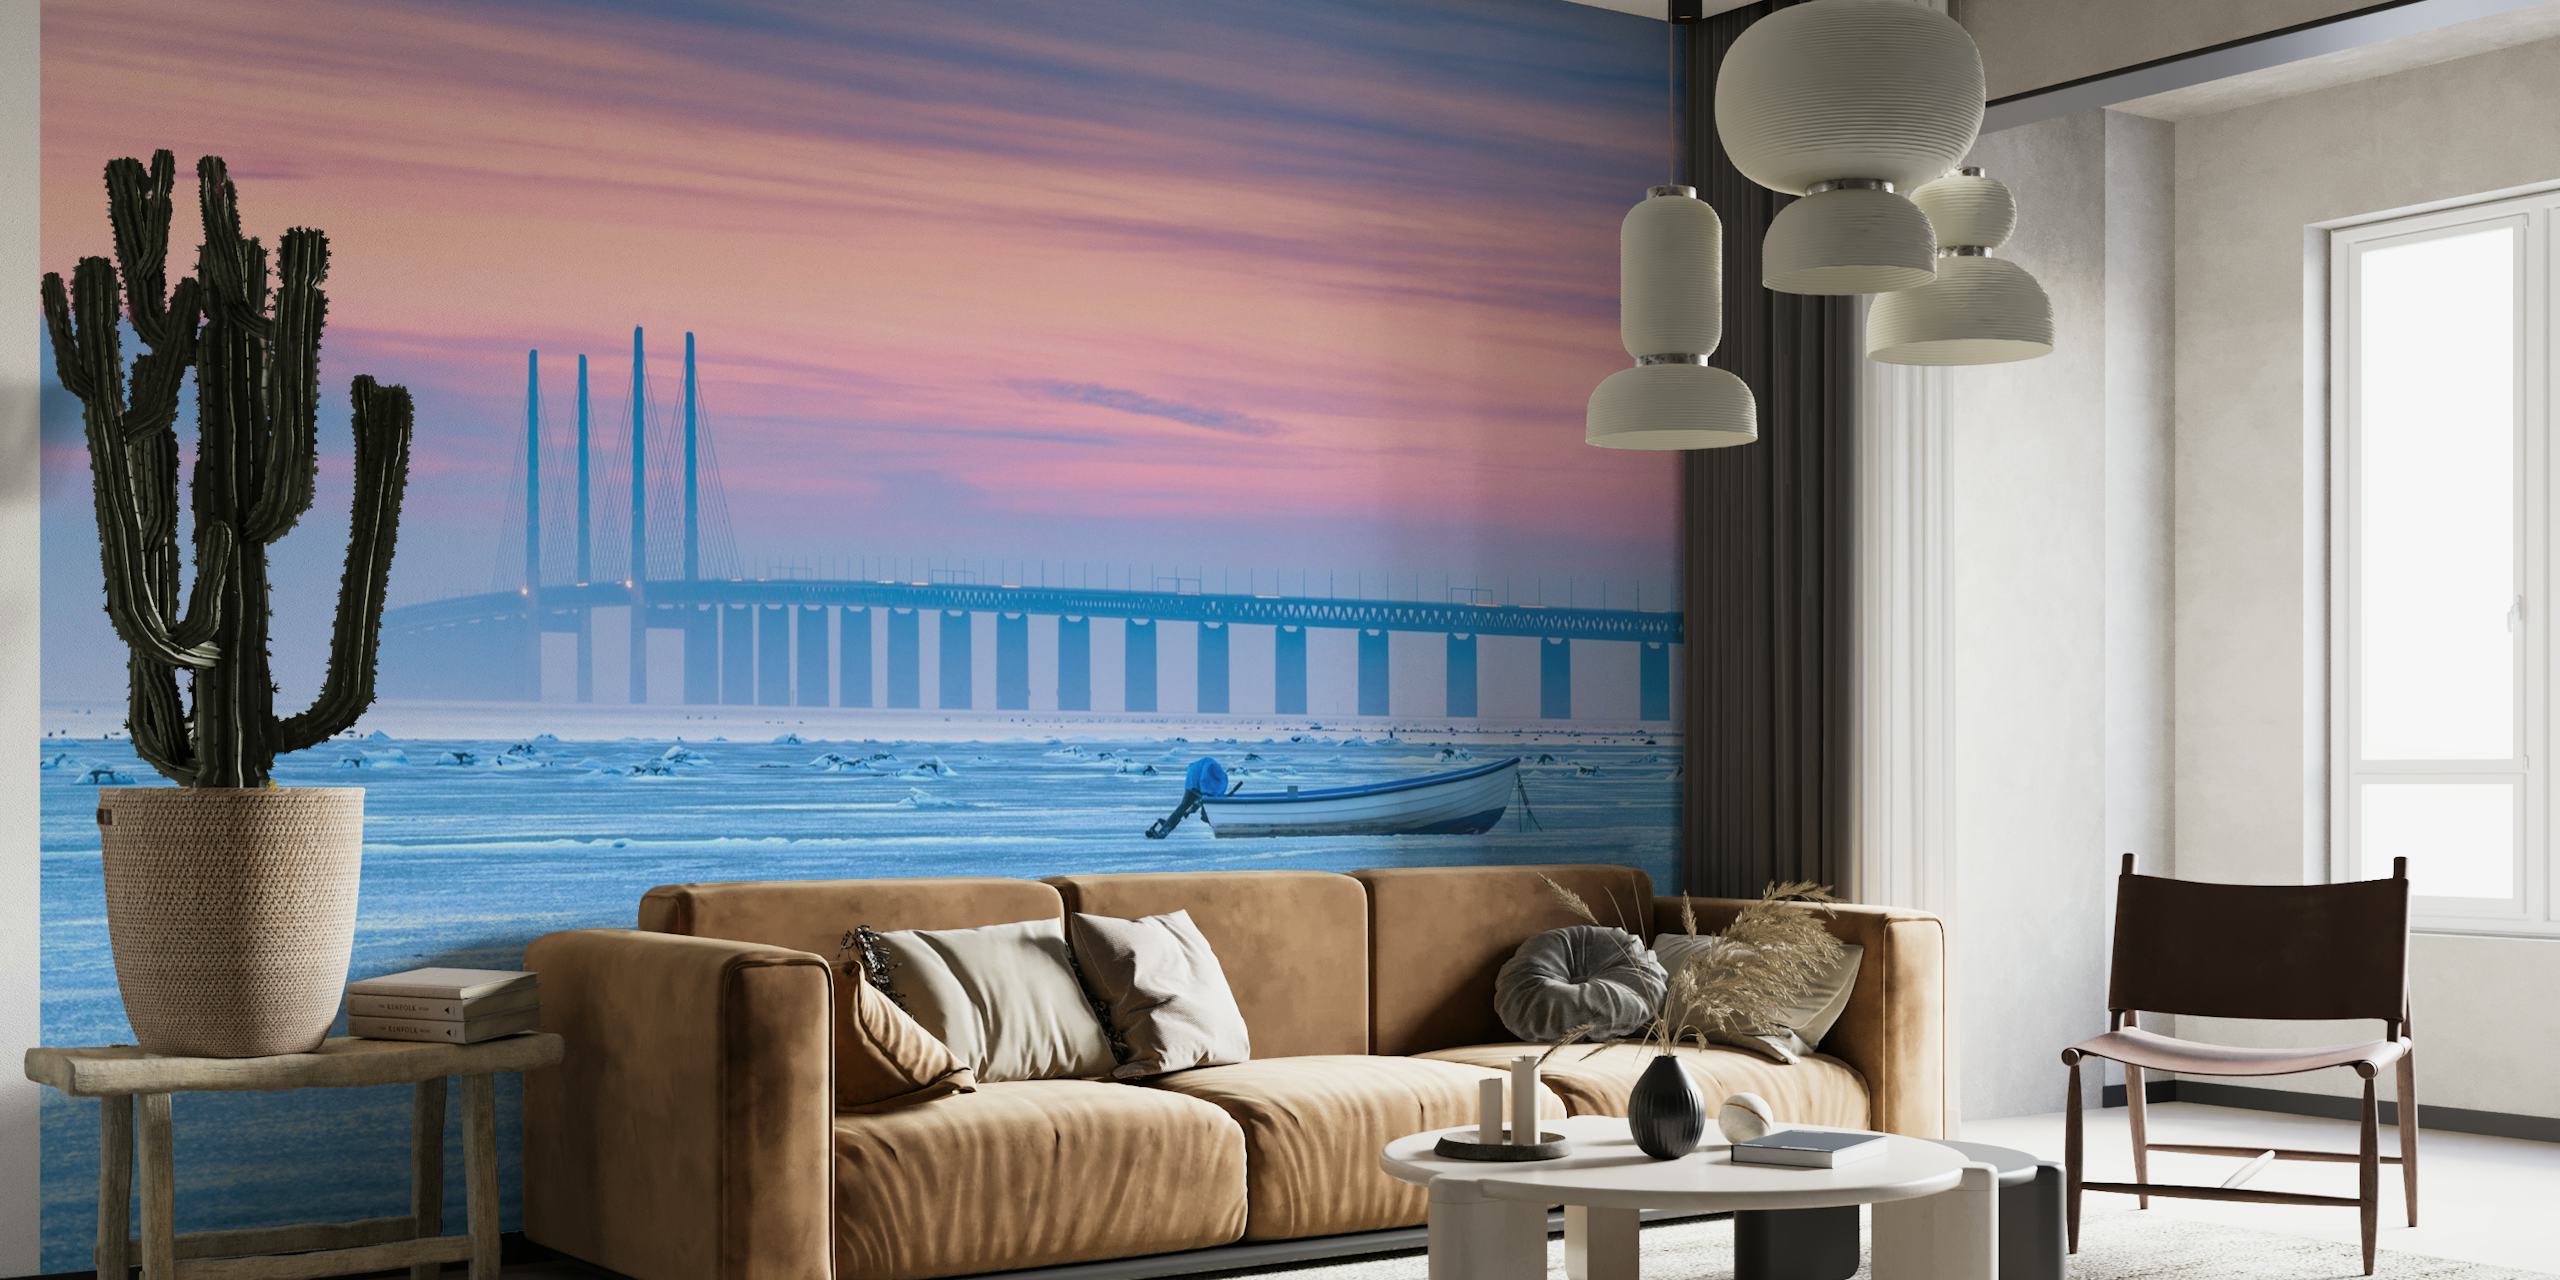 Et vægmaleri, der viser et frossent hav med en rolig pastelhimmel, en fjern bro og en ensom båd